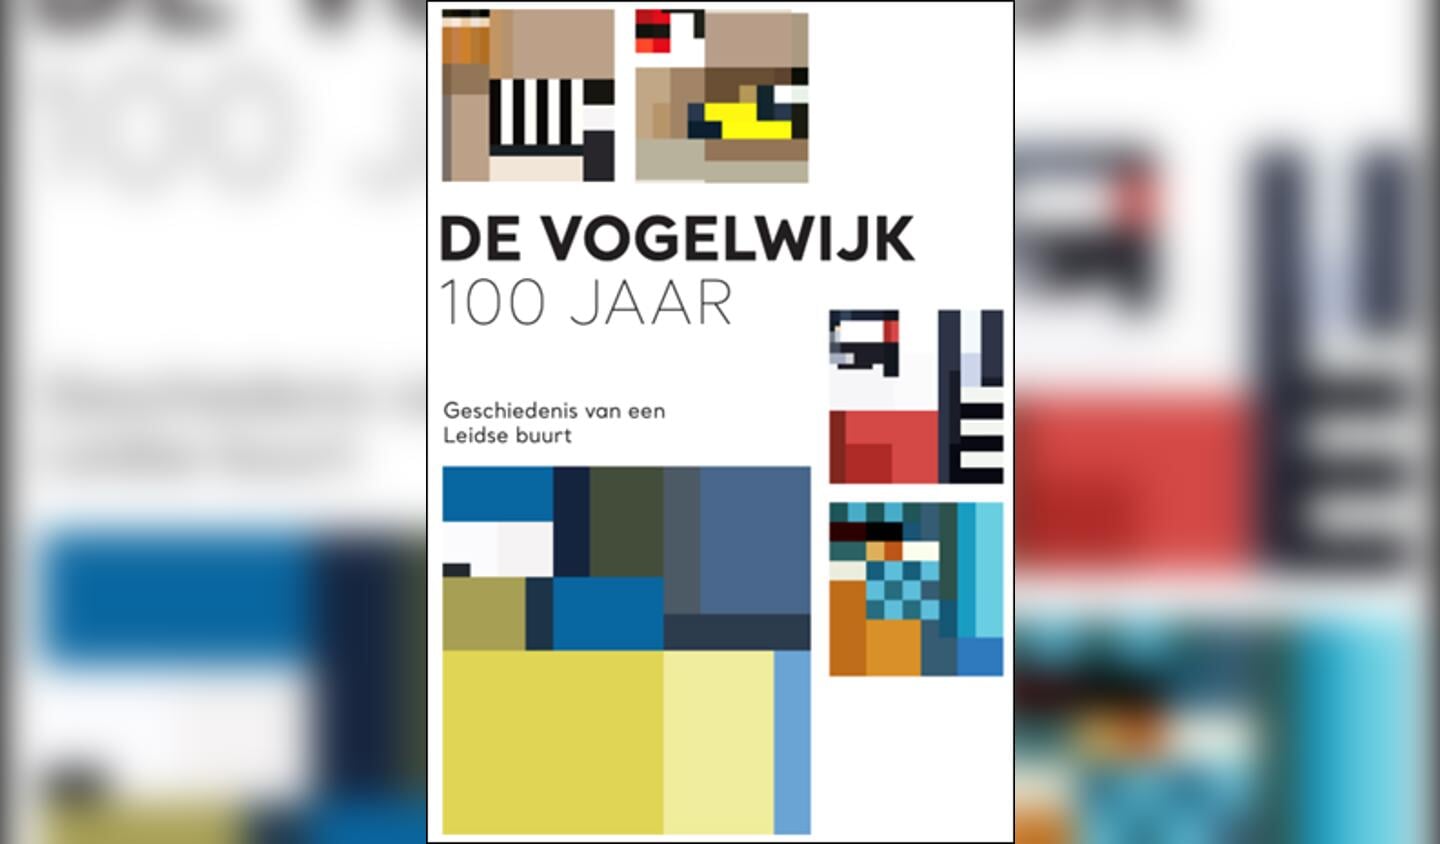 De Vogelwijk 100 jaar, geschiedenis van een Leidse buurt